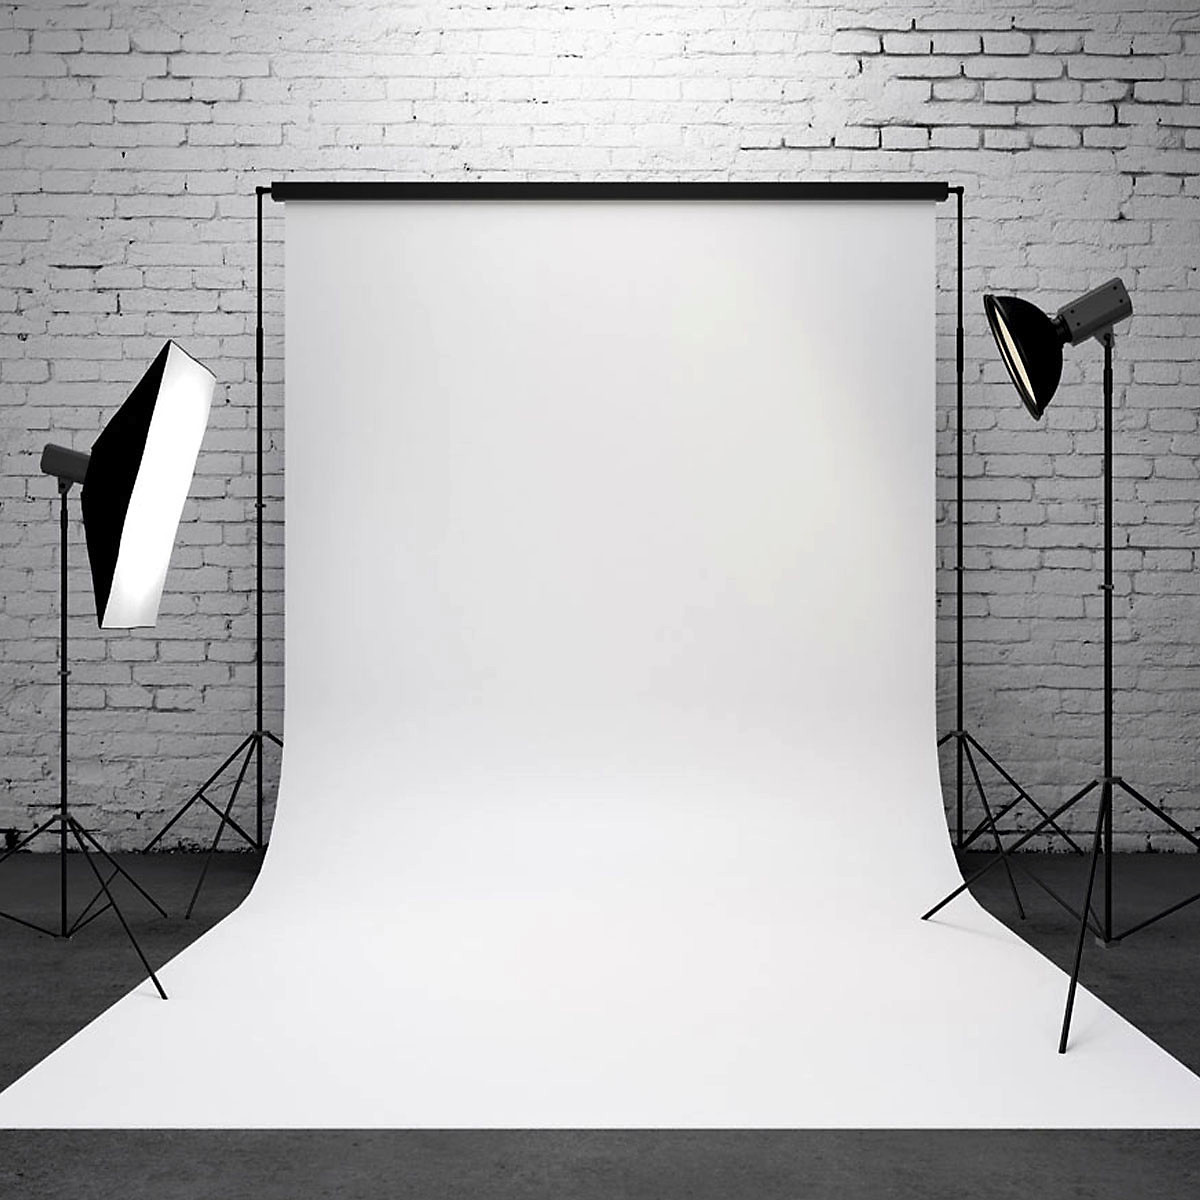 Vải nền studio màu trắng sẽ giúp tăng sự chuyên nghiệp và tinh tế cho bức ảnh của bạn. Vải này sẽ tạo ra độ sáng hoàn hảo và kết hợp tuyệt vời với mọi chủ đề. Đồng thời, vải còn có thể dễ dàng tháo rời và sử dụng nhiều lần, giúp tiết kiệm chi phí đáng kể.